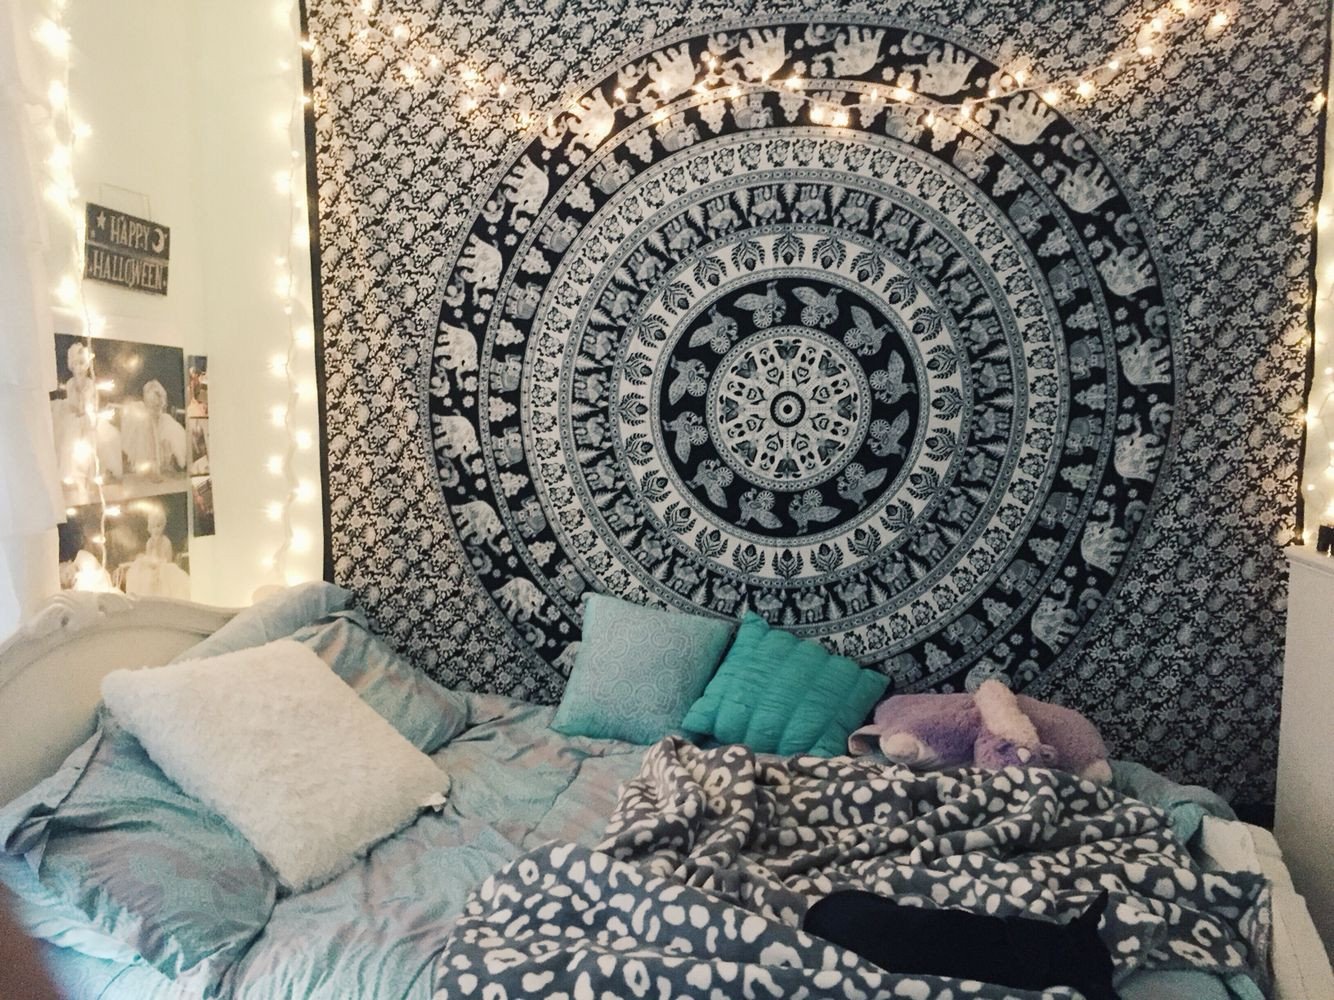 Tiffany Blue Bedroom Ideas Elegant Tumblr Bedroom Inspiration Lights Tapestry Pillows